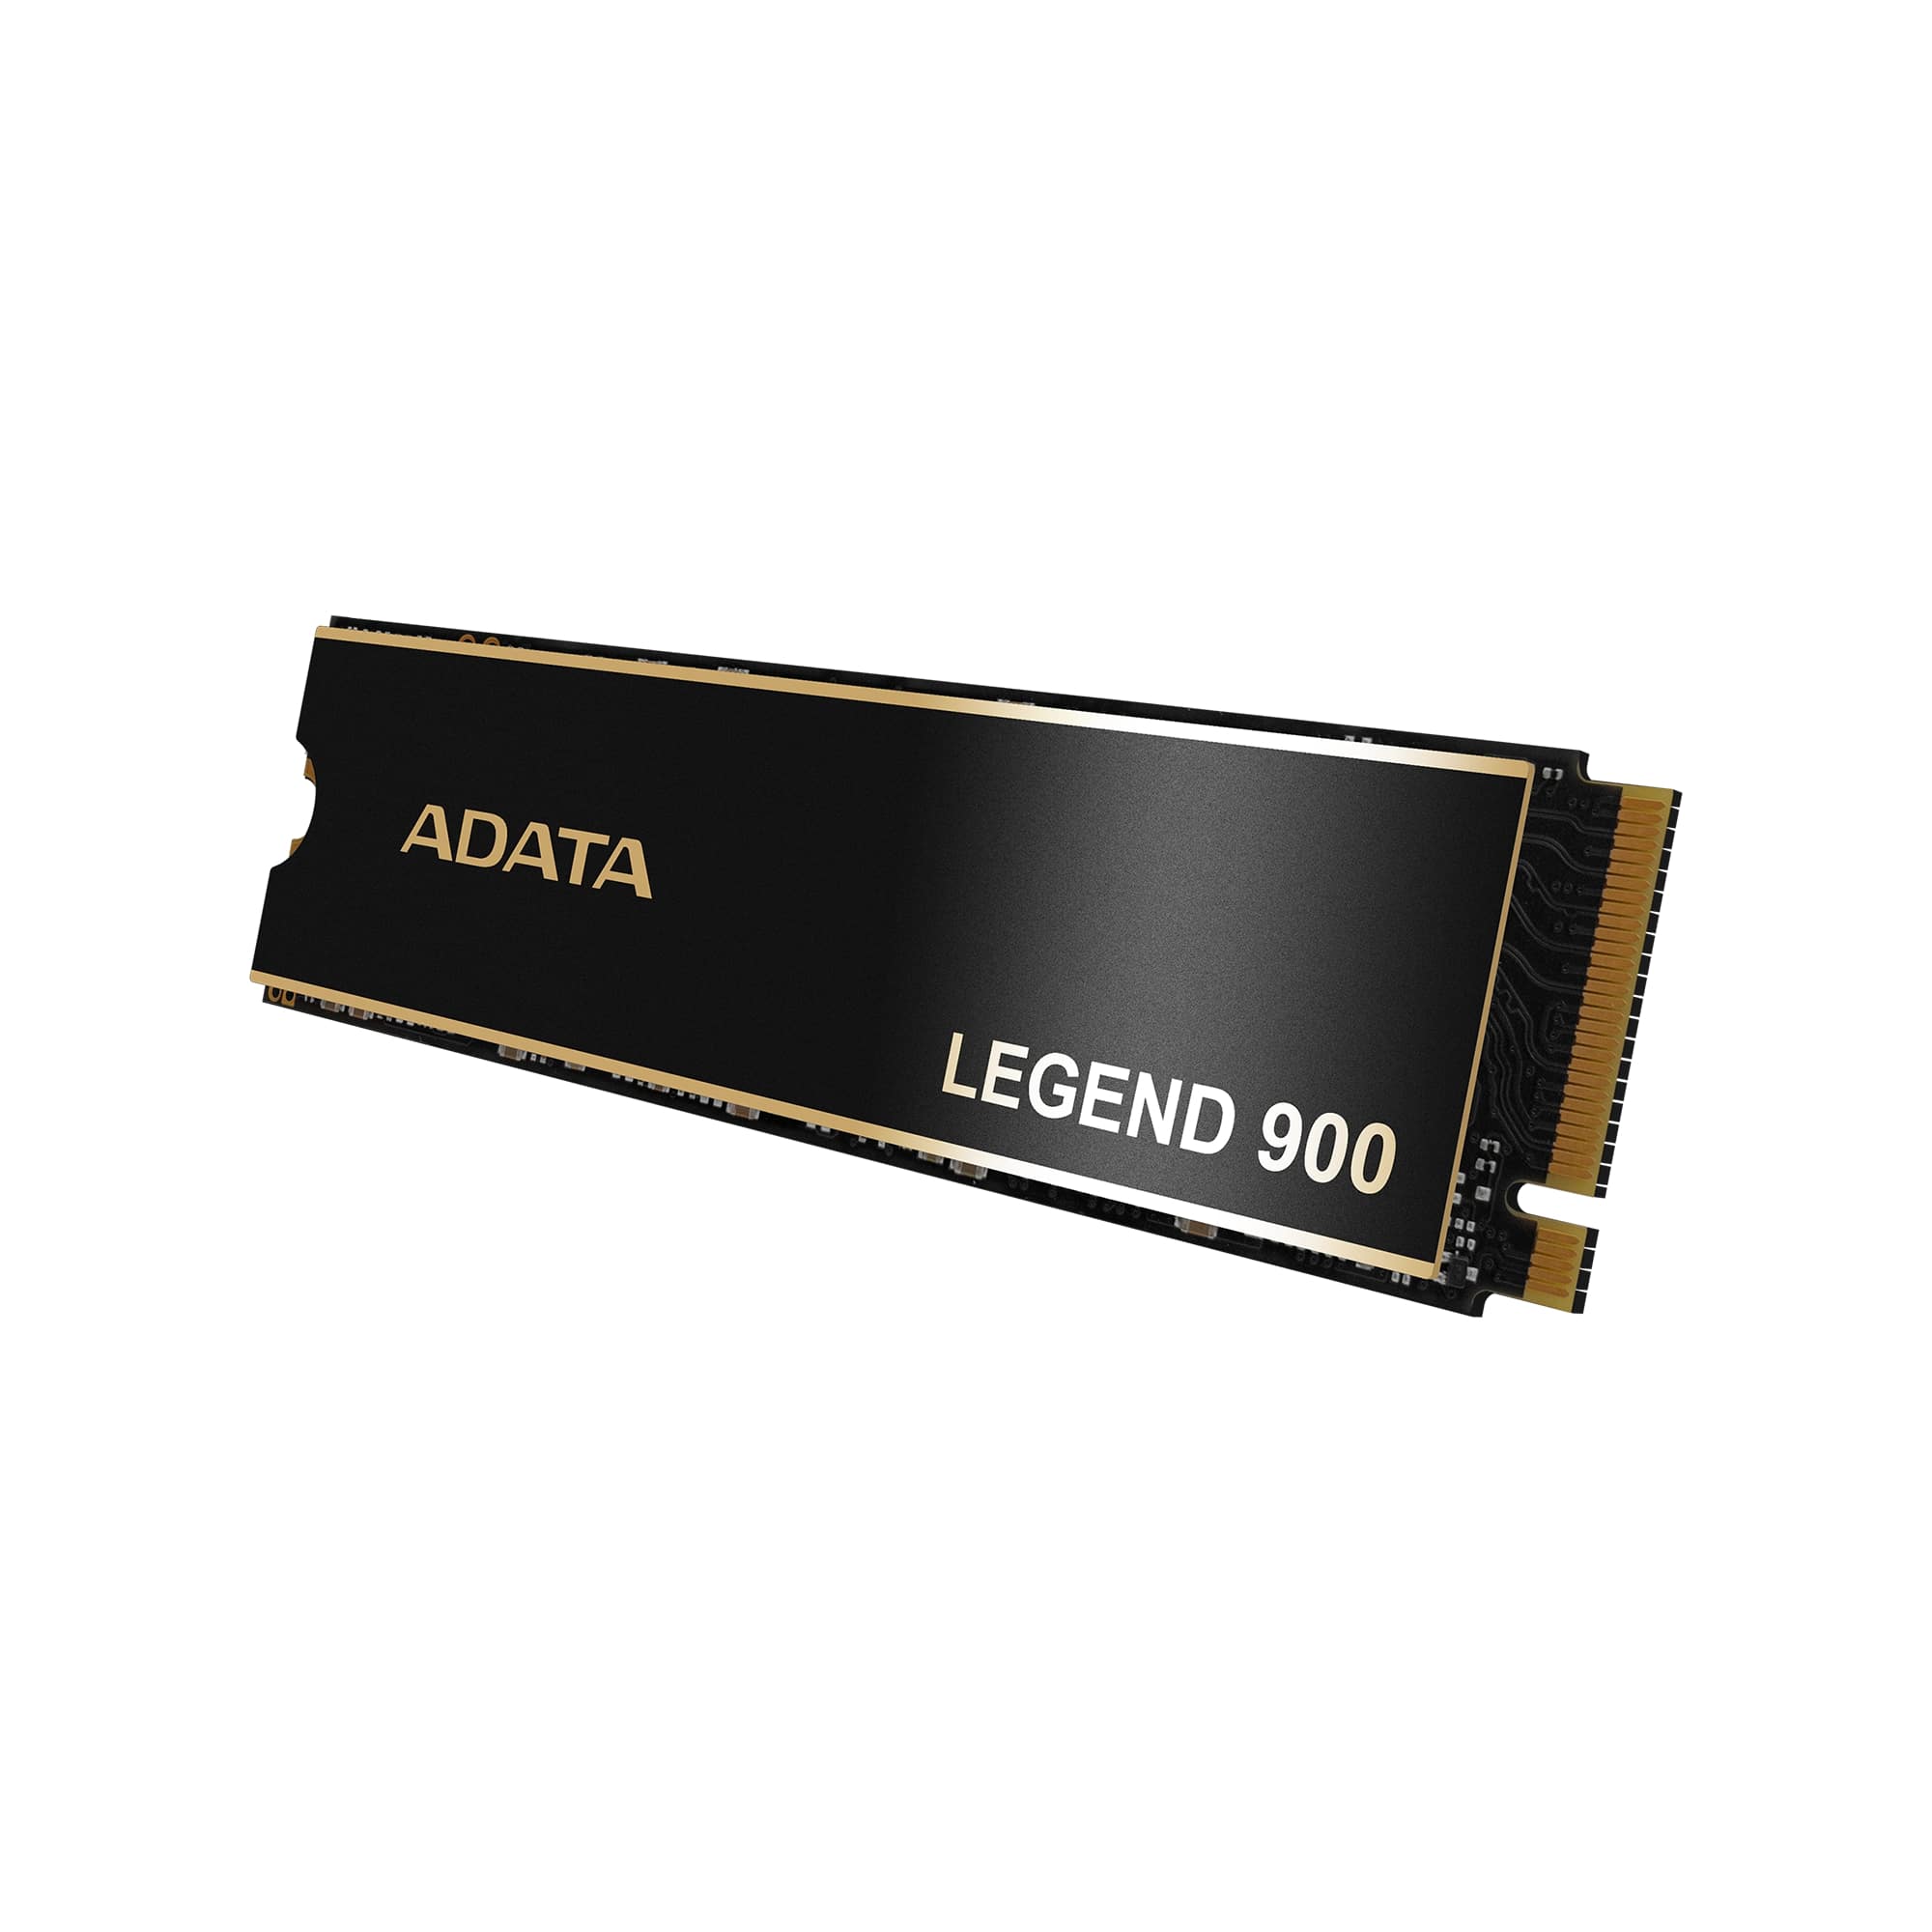 ADATA LEGEND 900/ 2TB/ SSD/ M.2 NVMe/ Čierna/ Heatsink/ 5R 